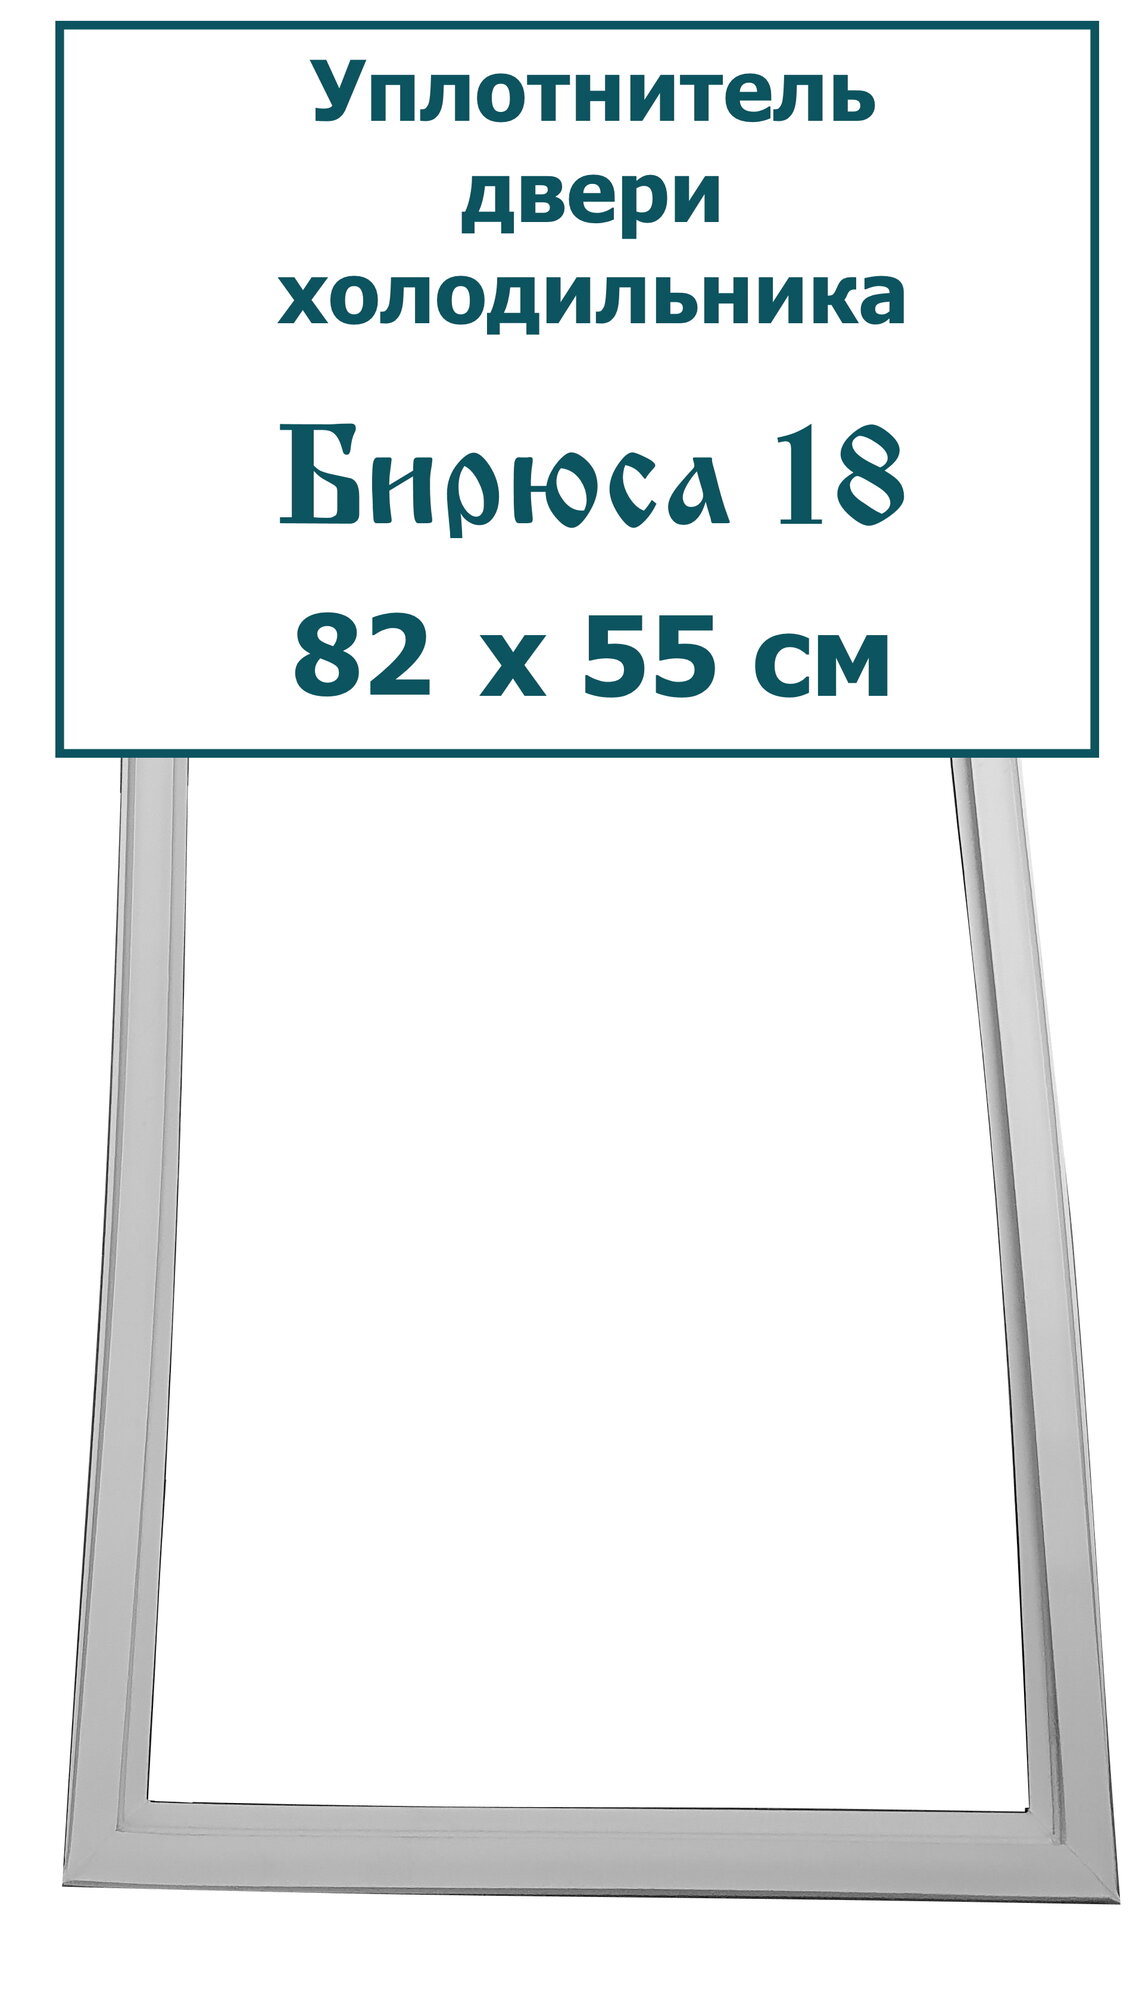 Уплотнитель двери холодильника Бирюса 18 (82 x 55 см)